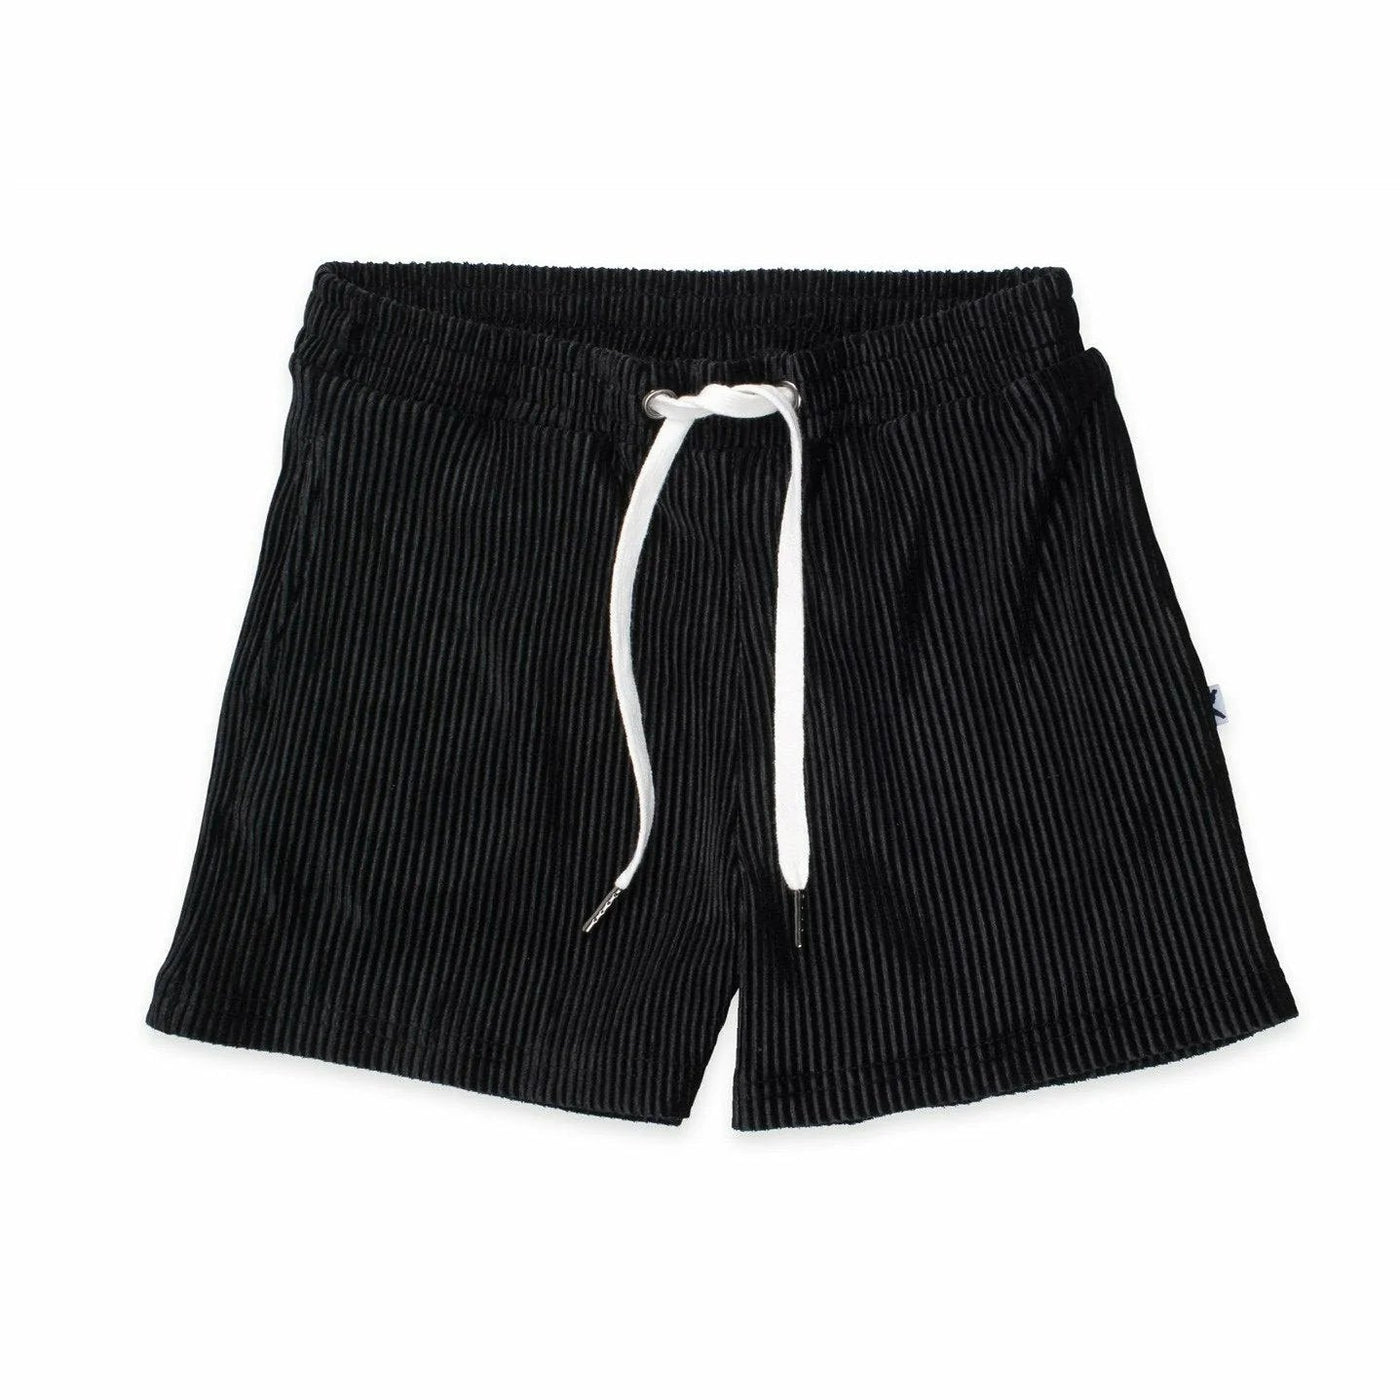 Roomy Shorts - Black Shorts Minti 